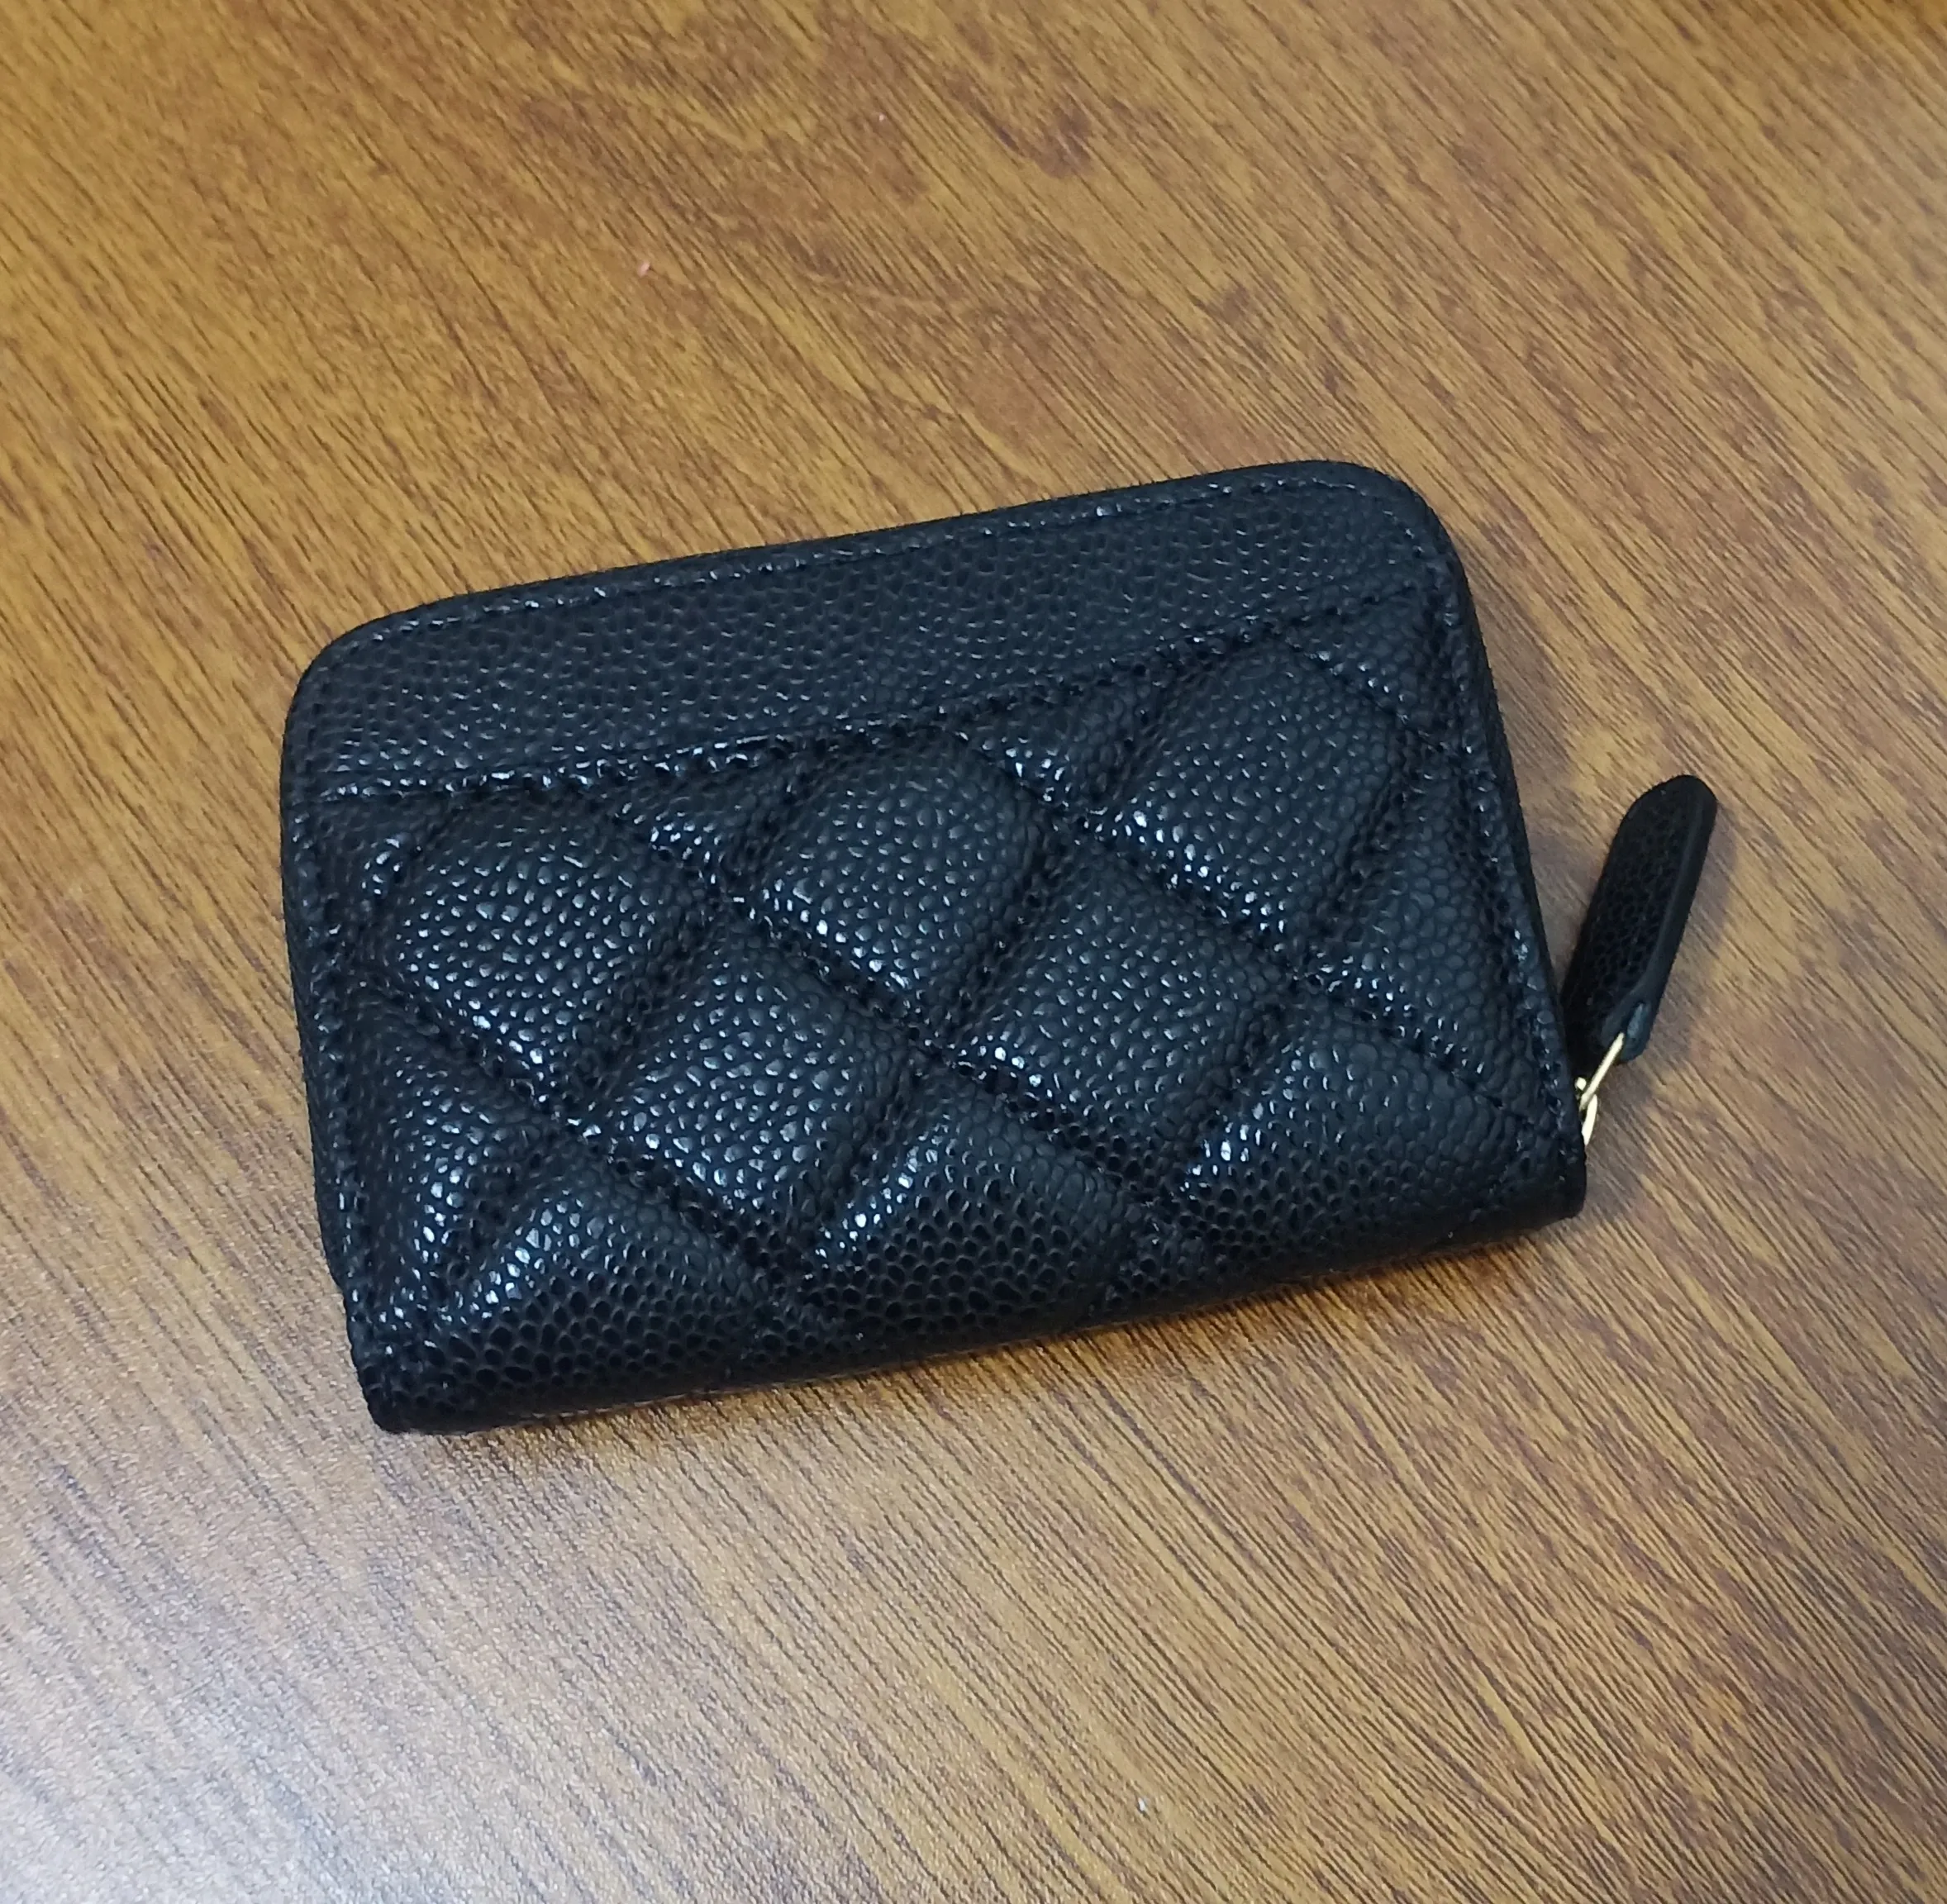 Amazwholesale 럭셔리 디자이너 진짜 가죽 코인 지갑 여성용 짧은 지갑 주위의 유명한 지퍼 카드 케이스 케이스 블랙 컬러